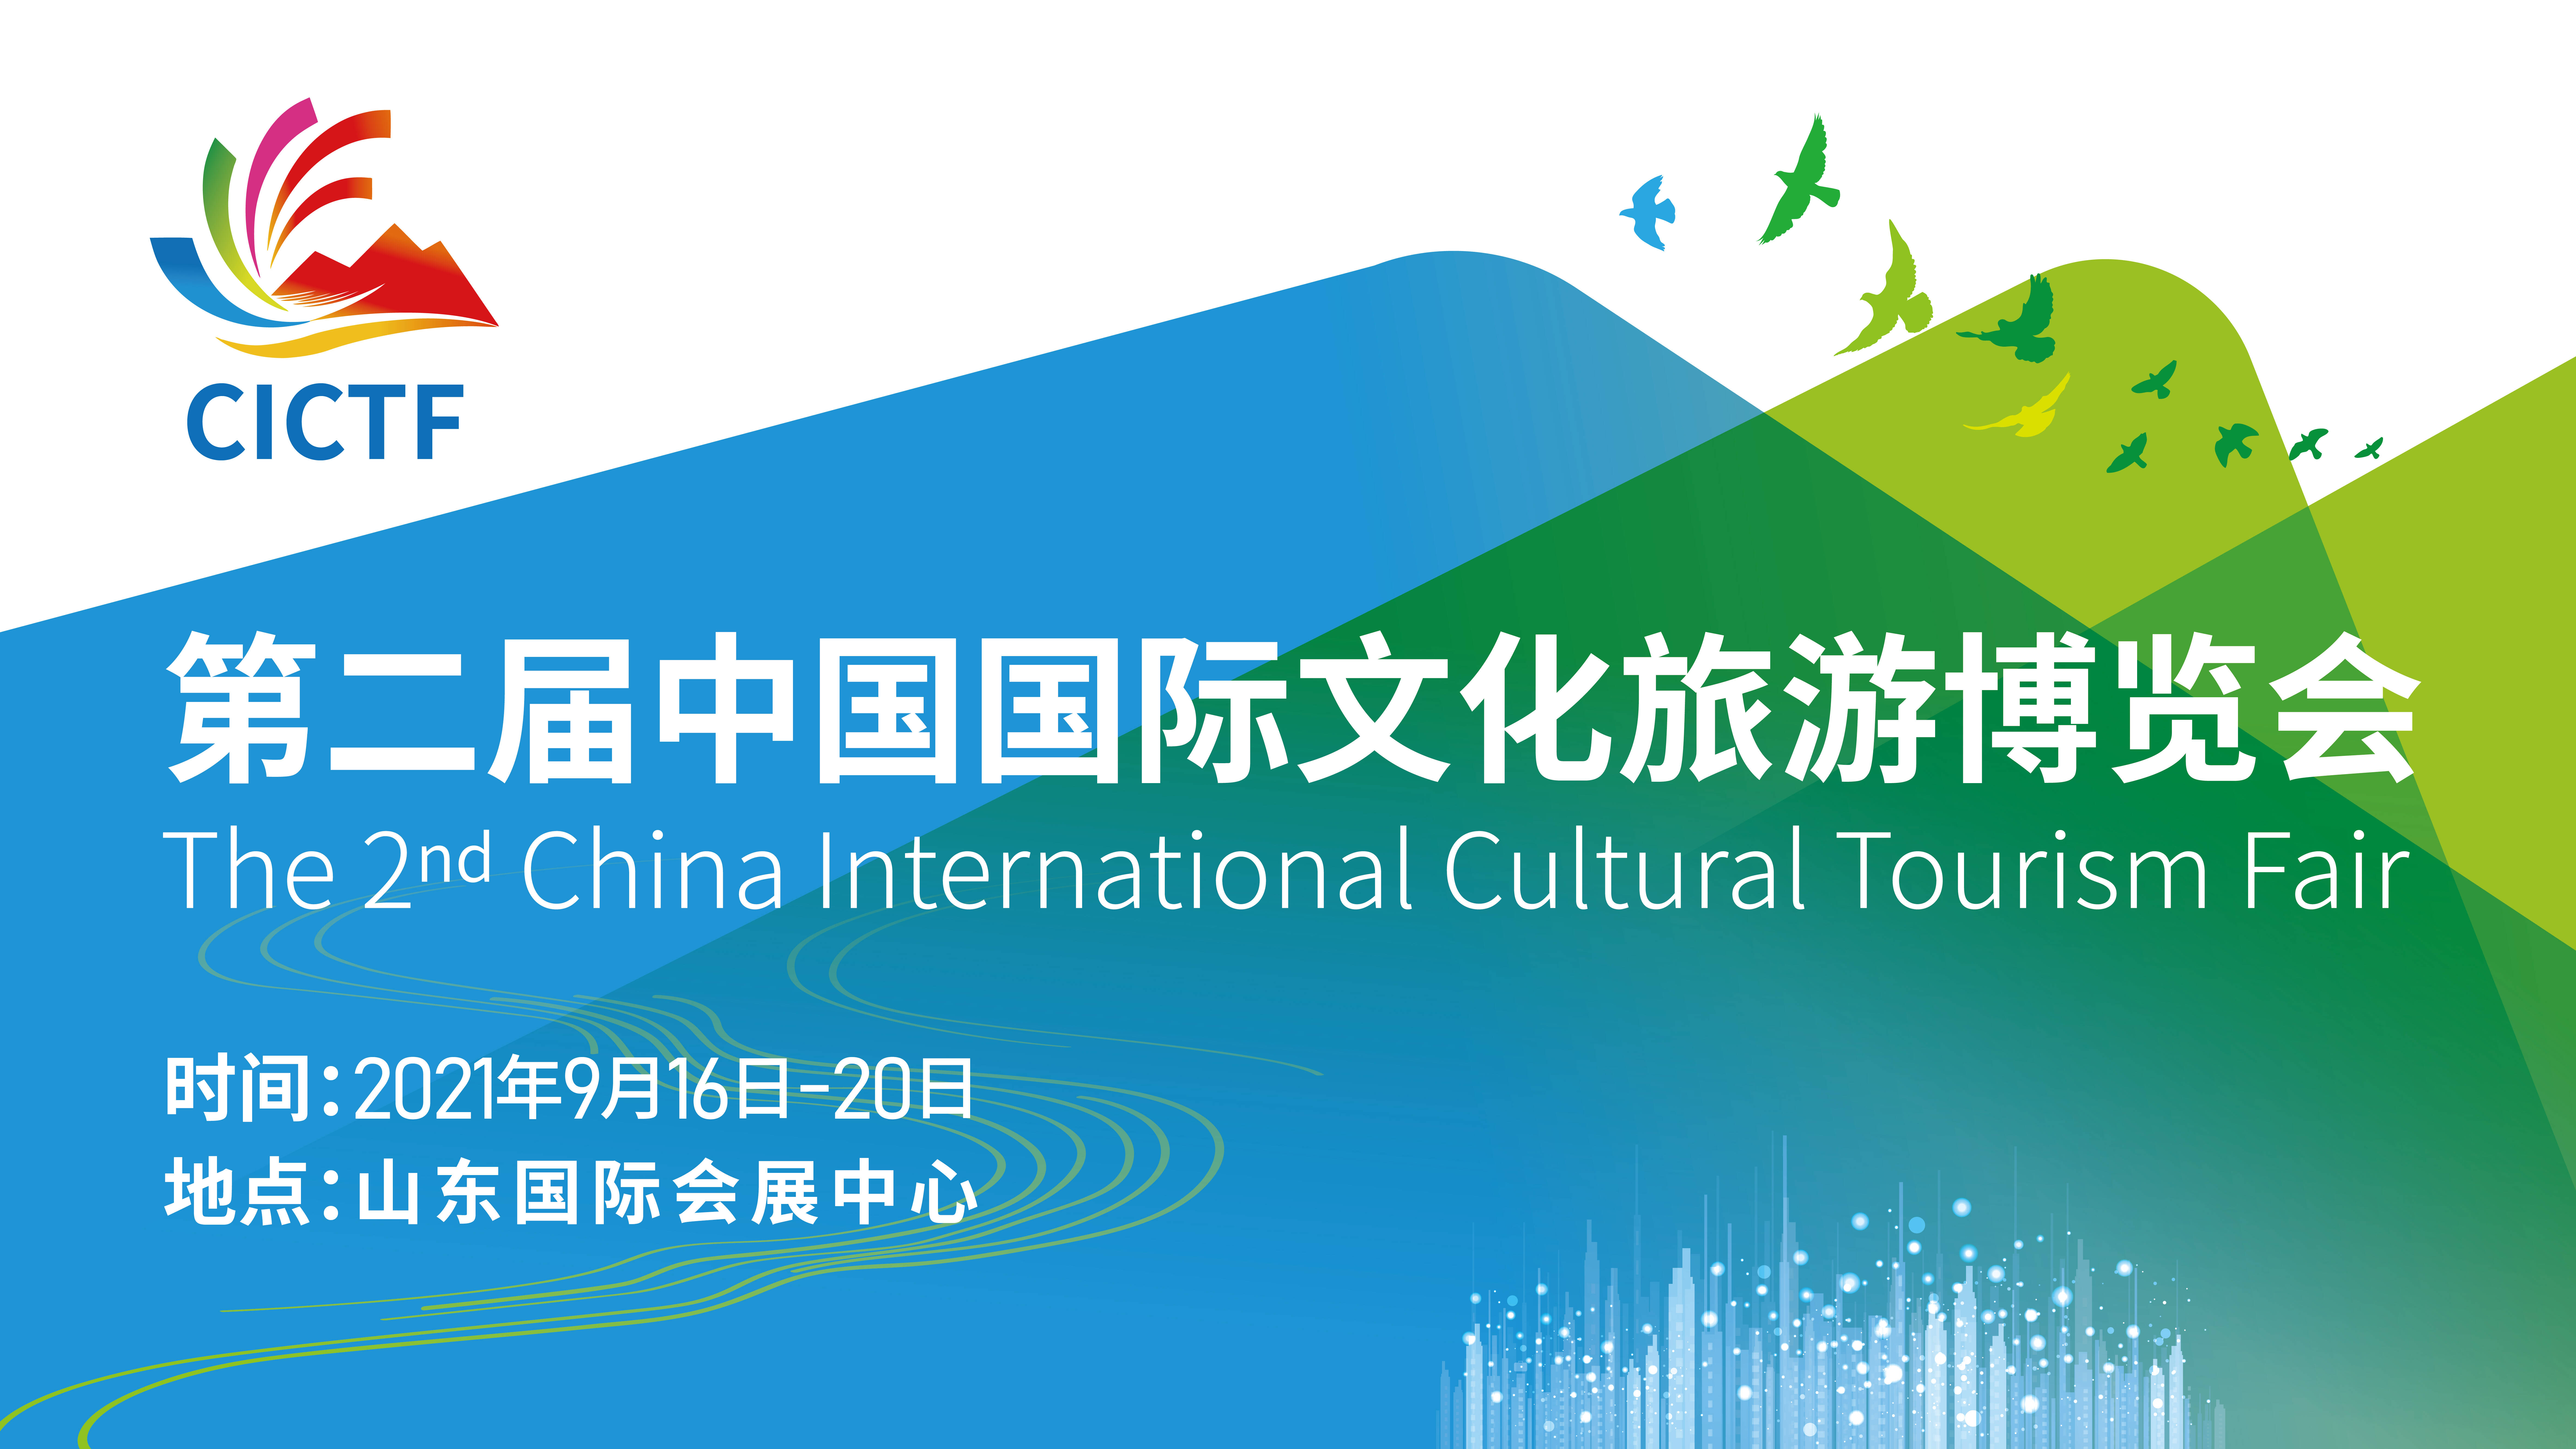 免费逛！第二届中国国际文化旅游博览会入场须“实名”